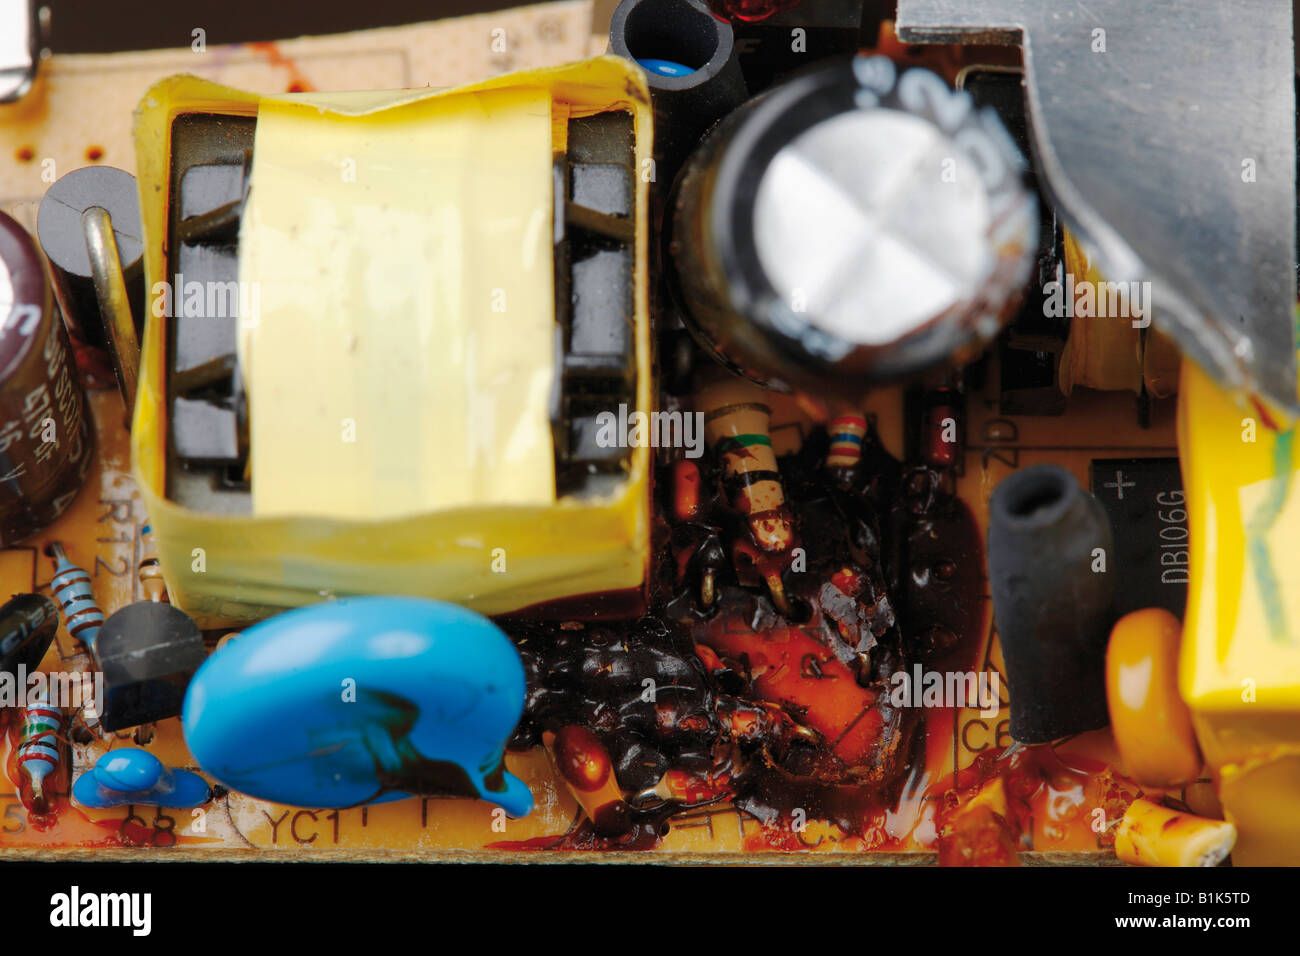 Defekte Platine mit Kondensator geplatzt Stockfotografie - Alamy